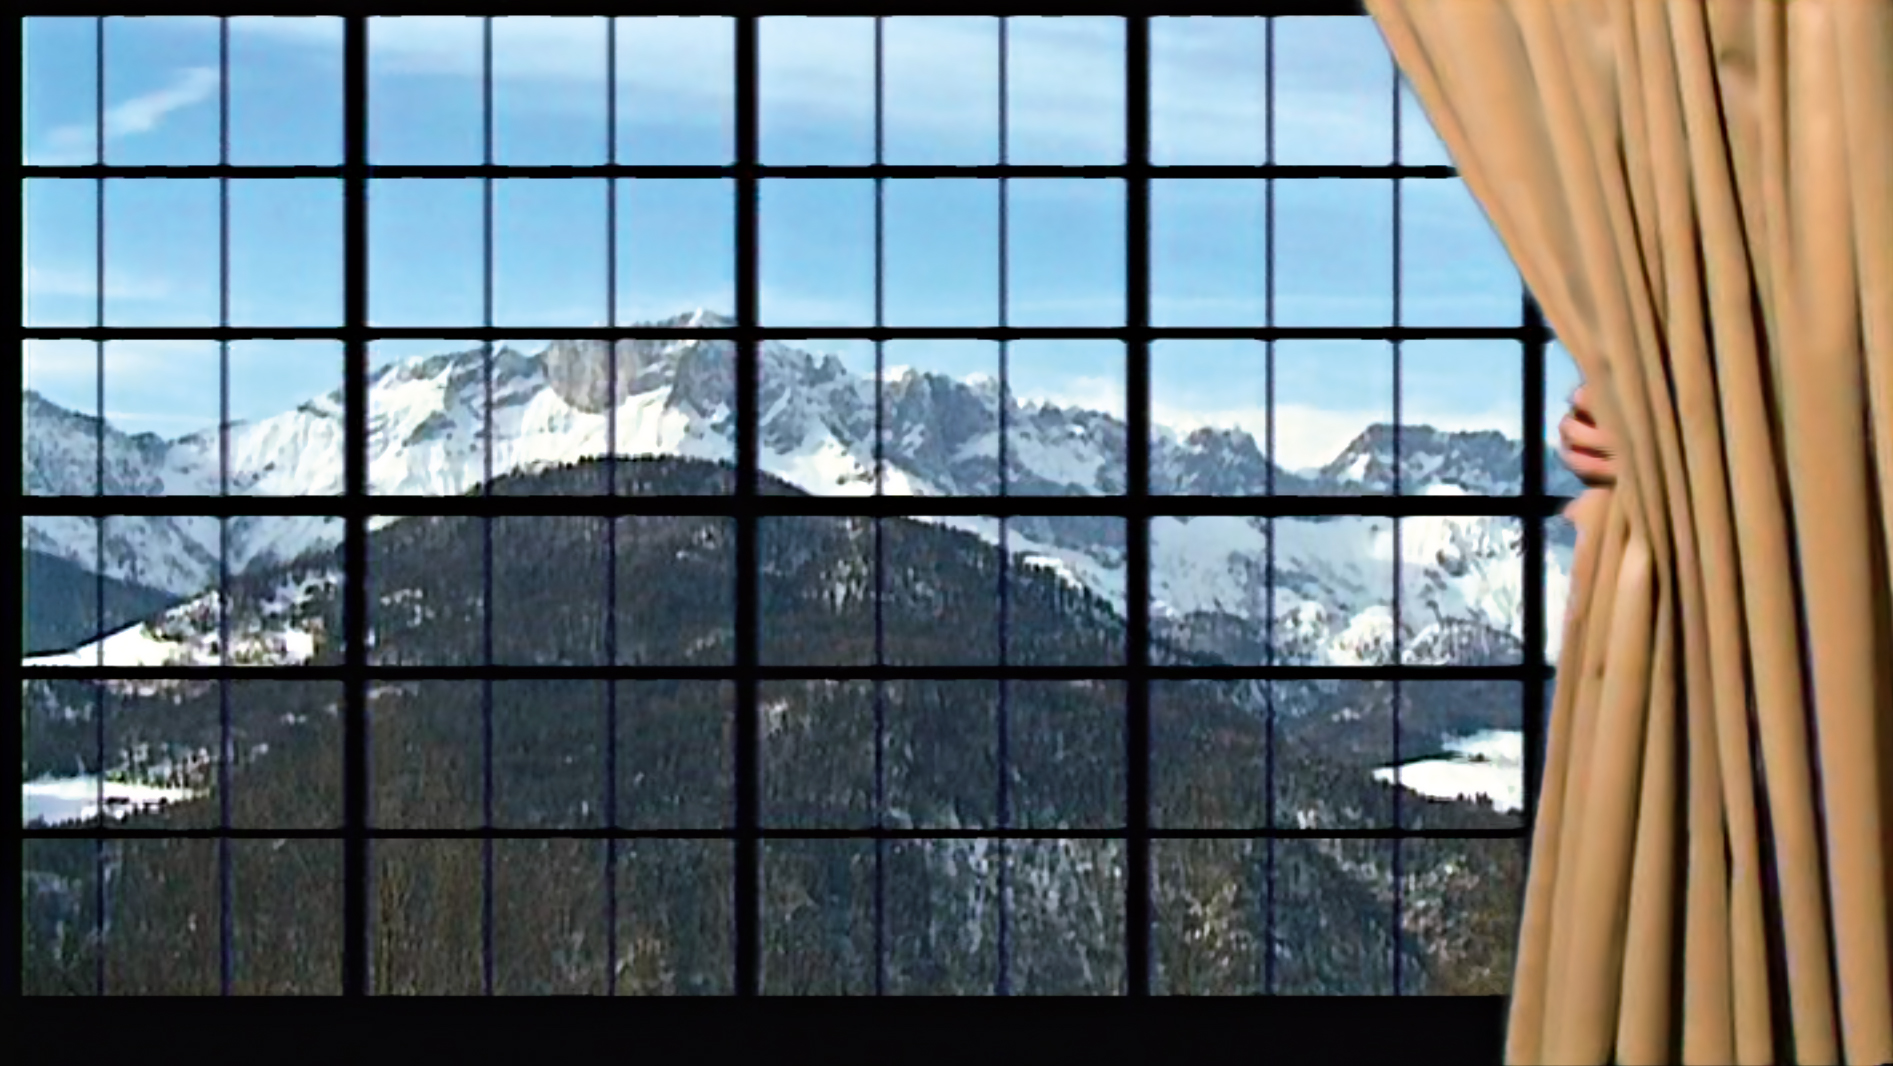 Marcel Odenbach, Das große Fenster, Einblick eines Ausblicks, 2001, Einkanal-Videoinstallation, Farbe und SW, Ton, 12‘20" (Still) © VG Bild-Kunst, Bonn 2021 